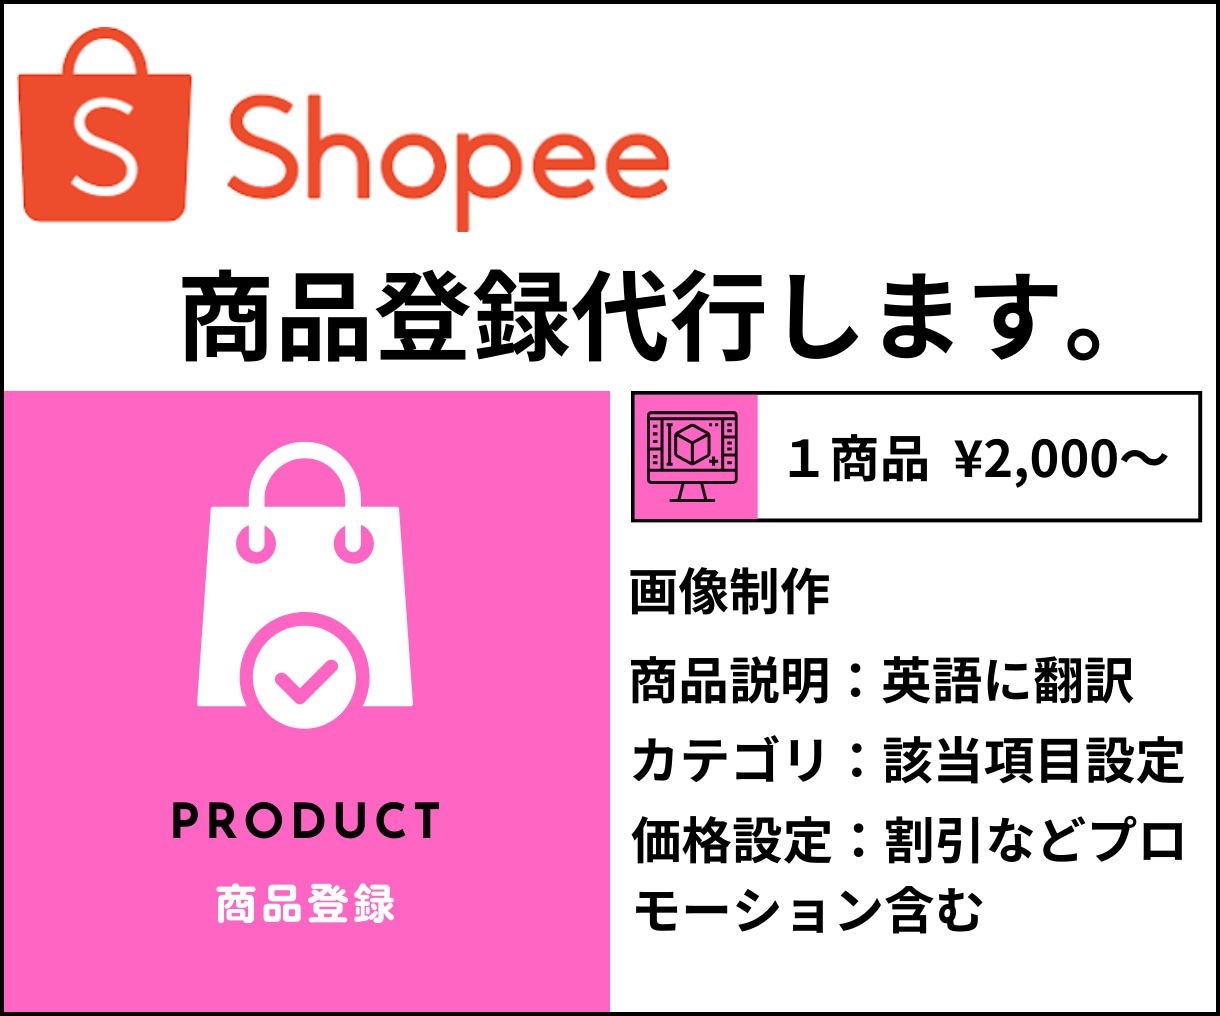 Shopeeの商品画像(5枚)＋商品登録代行します 面倒なことはお任せ下さい。まずはお気軽にお問い合わせ下さい。 イメージ1